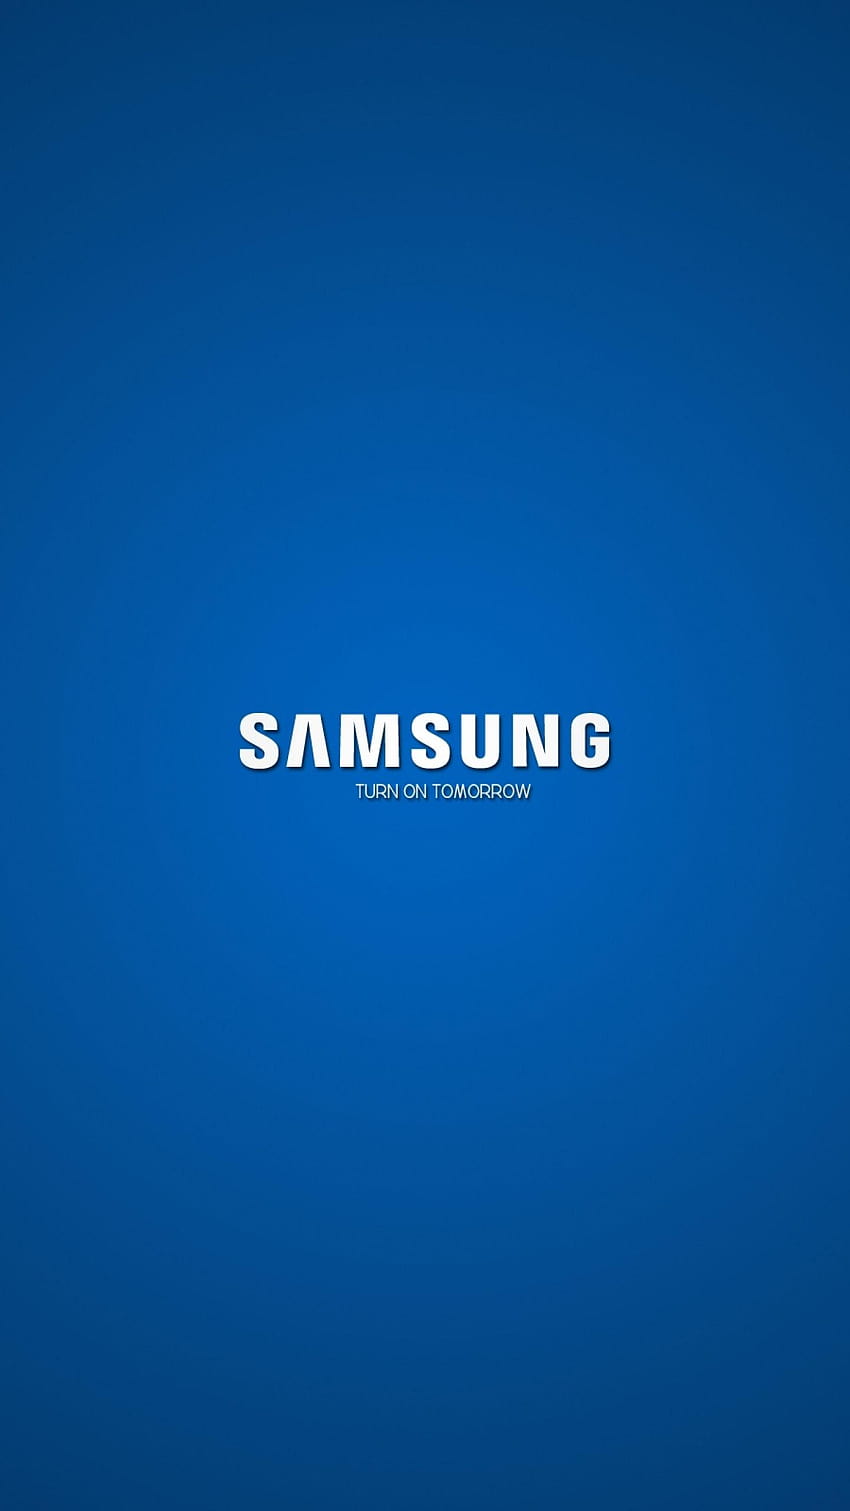 Samsung Galaxy là một trong những thương hiệu điện thoại hàng đầu thế giới. Hãy xem ảnh liên quan để tìm hiểu về những sản phẩm công nghệ cao của họ như Samsung Galaxy S6, S7, Edge, Note và LG G4 Company với độ phân giải 1440x2560 HD.